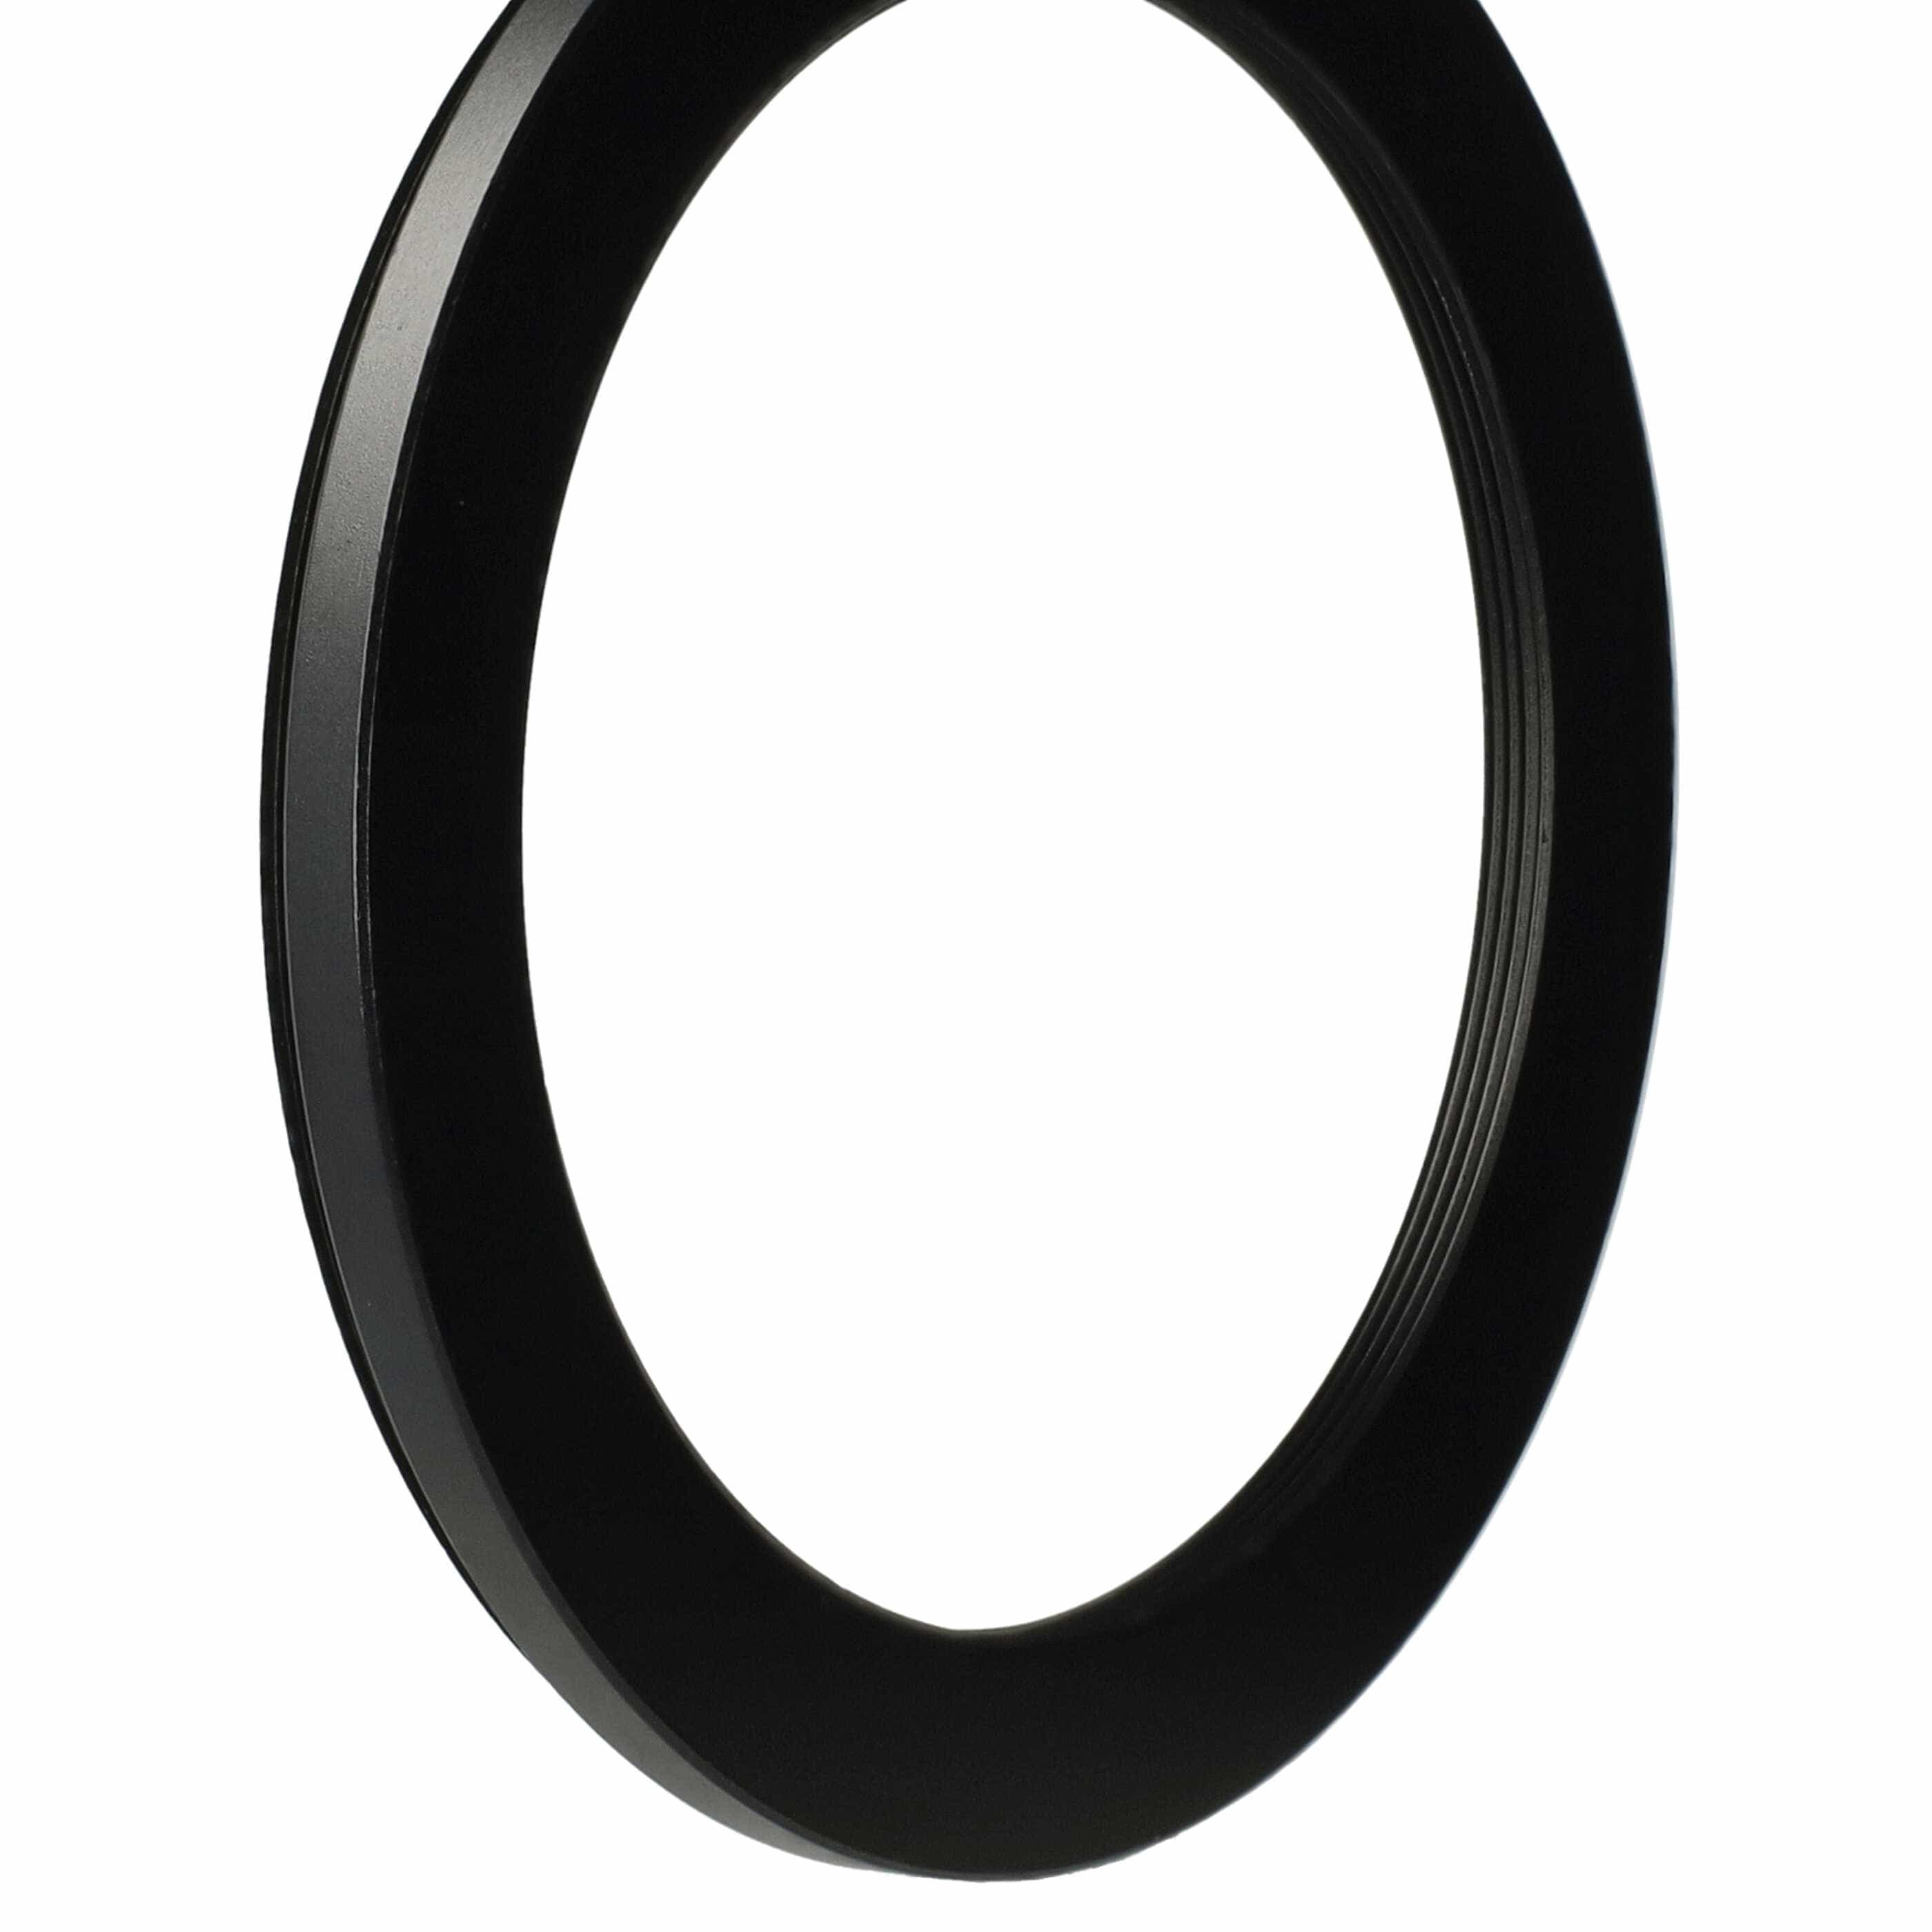 Anello adattatore step-down da 77 mm a 62 mm per obiettivo fotocamera - Adattatore filtro, metallo, nero